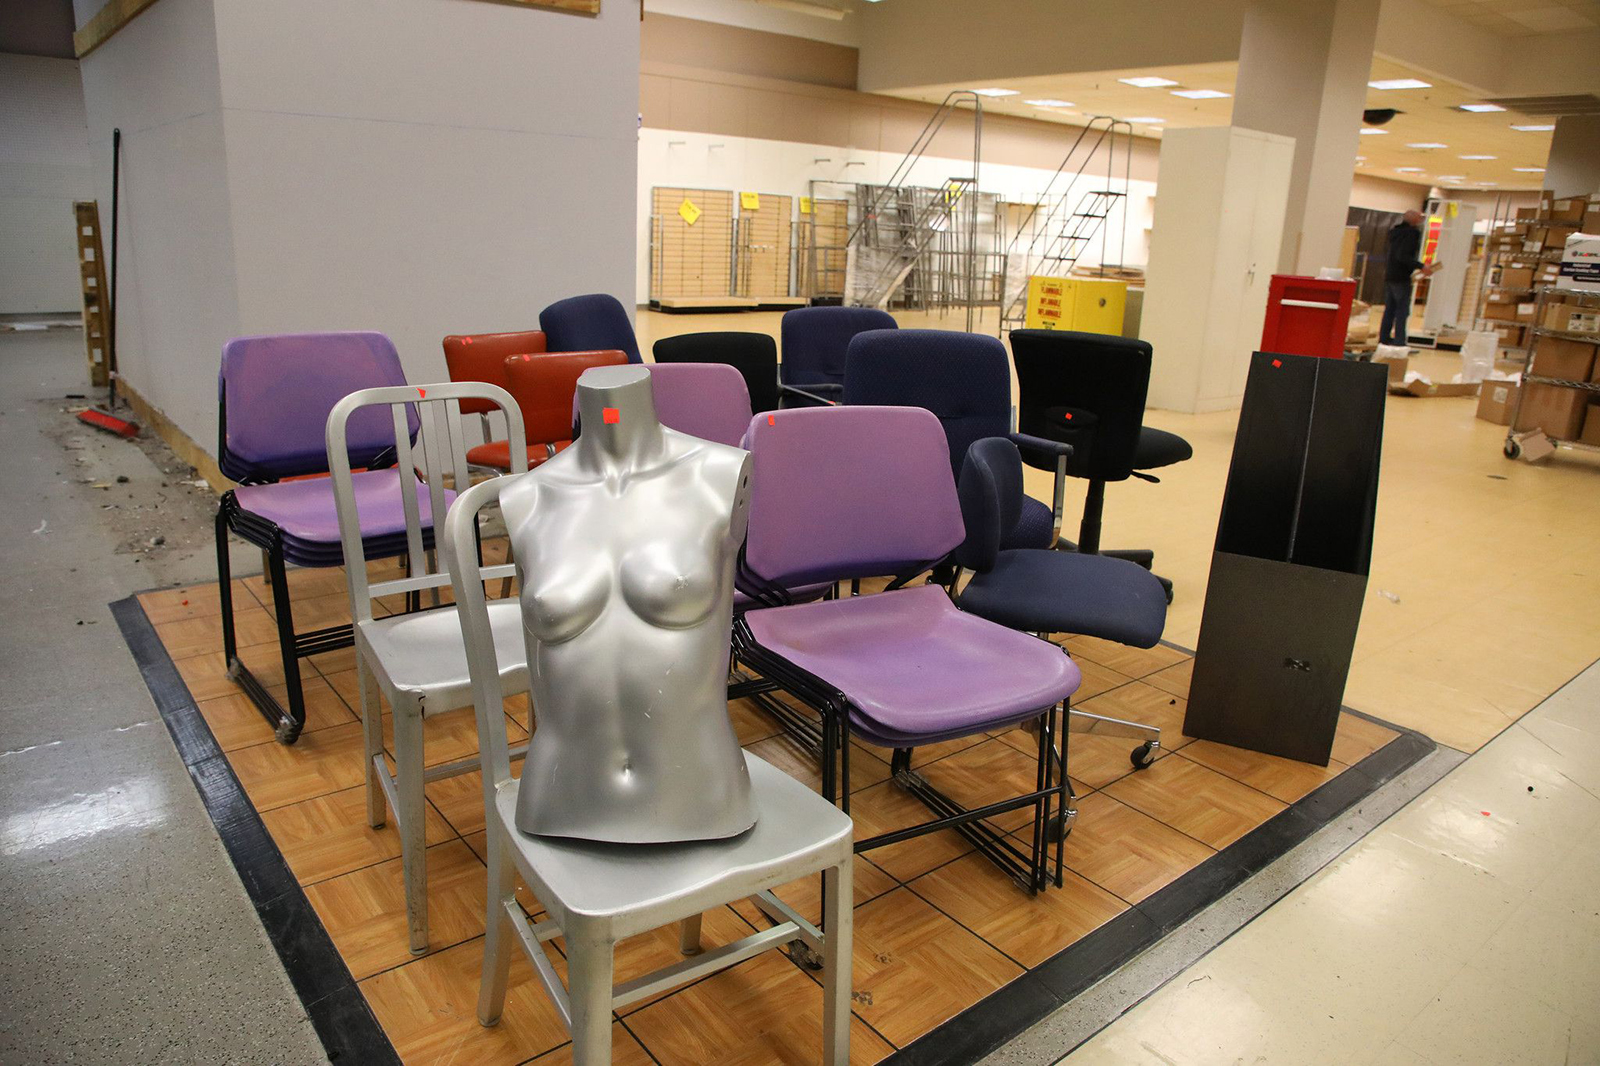 een deel van een mannequin kan worden gezien op een stoel in de binnenkort gesloten Sears winkel in Woodfield Mall, donderdag, november. 11, 2021, in Schaumburg, Illinois. (Stacey Wescott/Chicago Tribune / Tribune News Service via Getty Images)